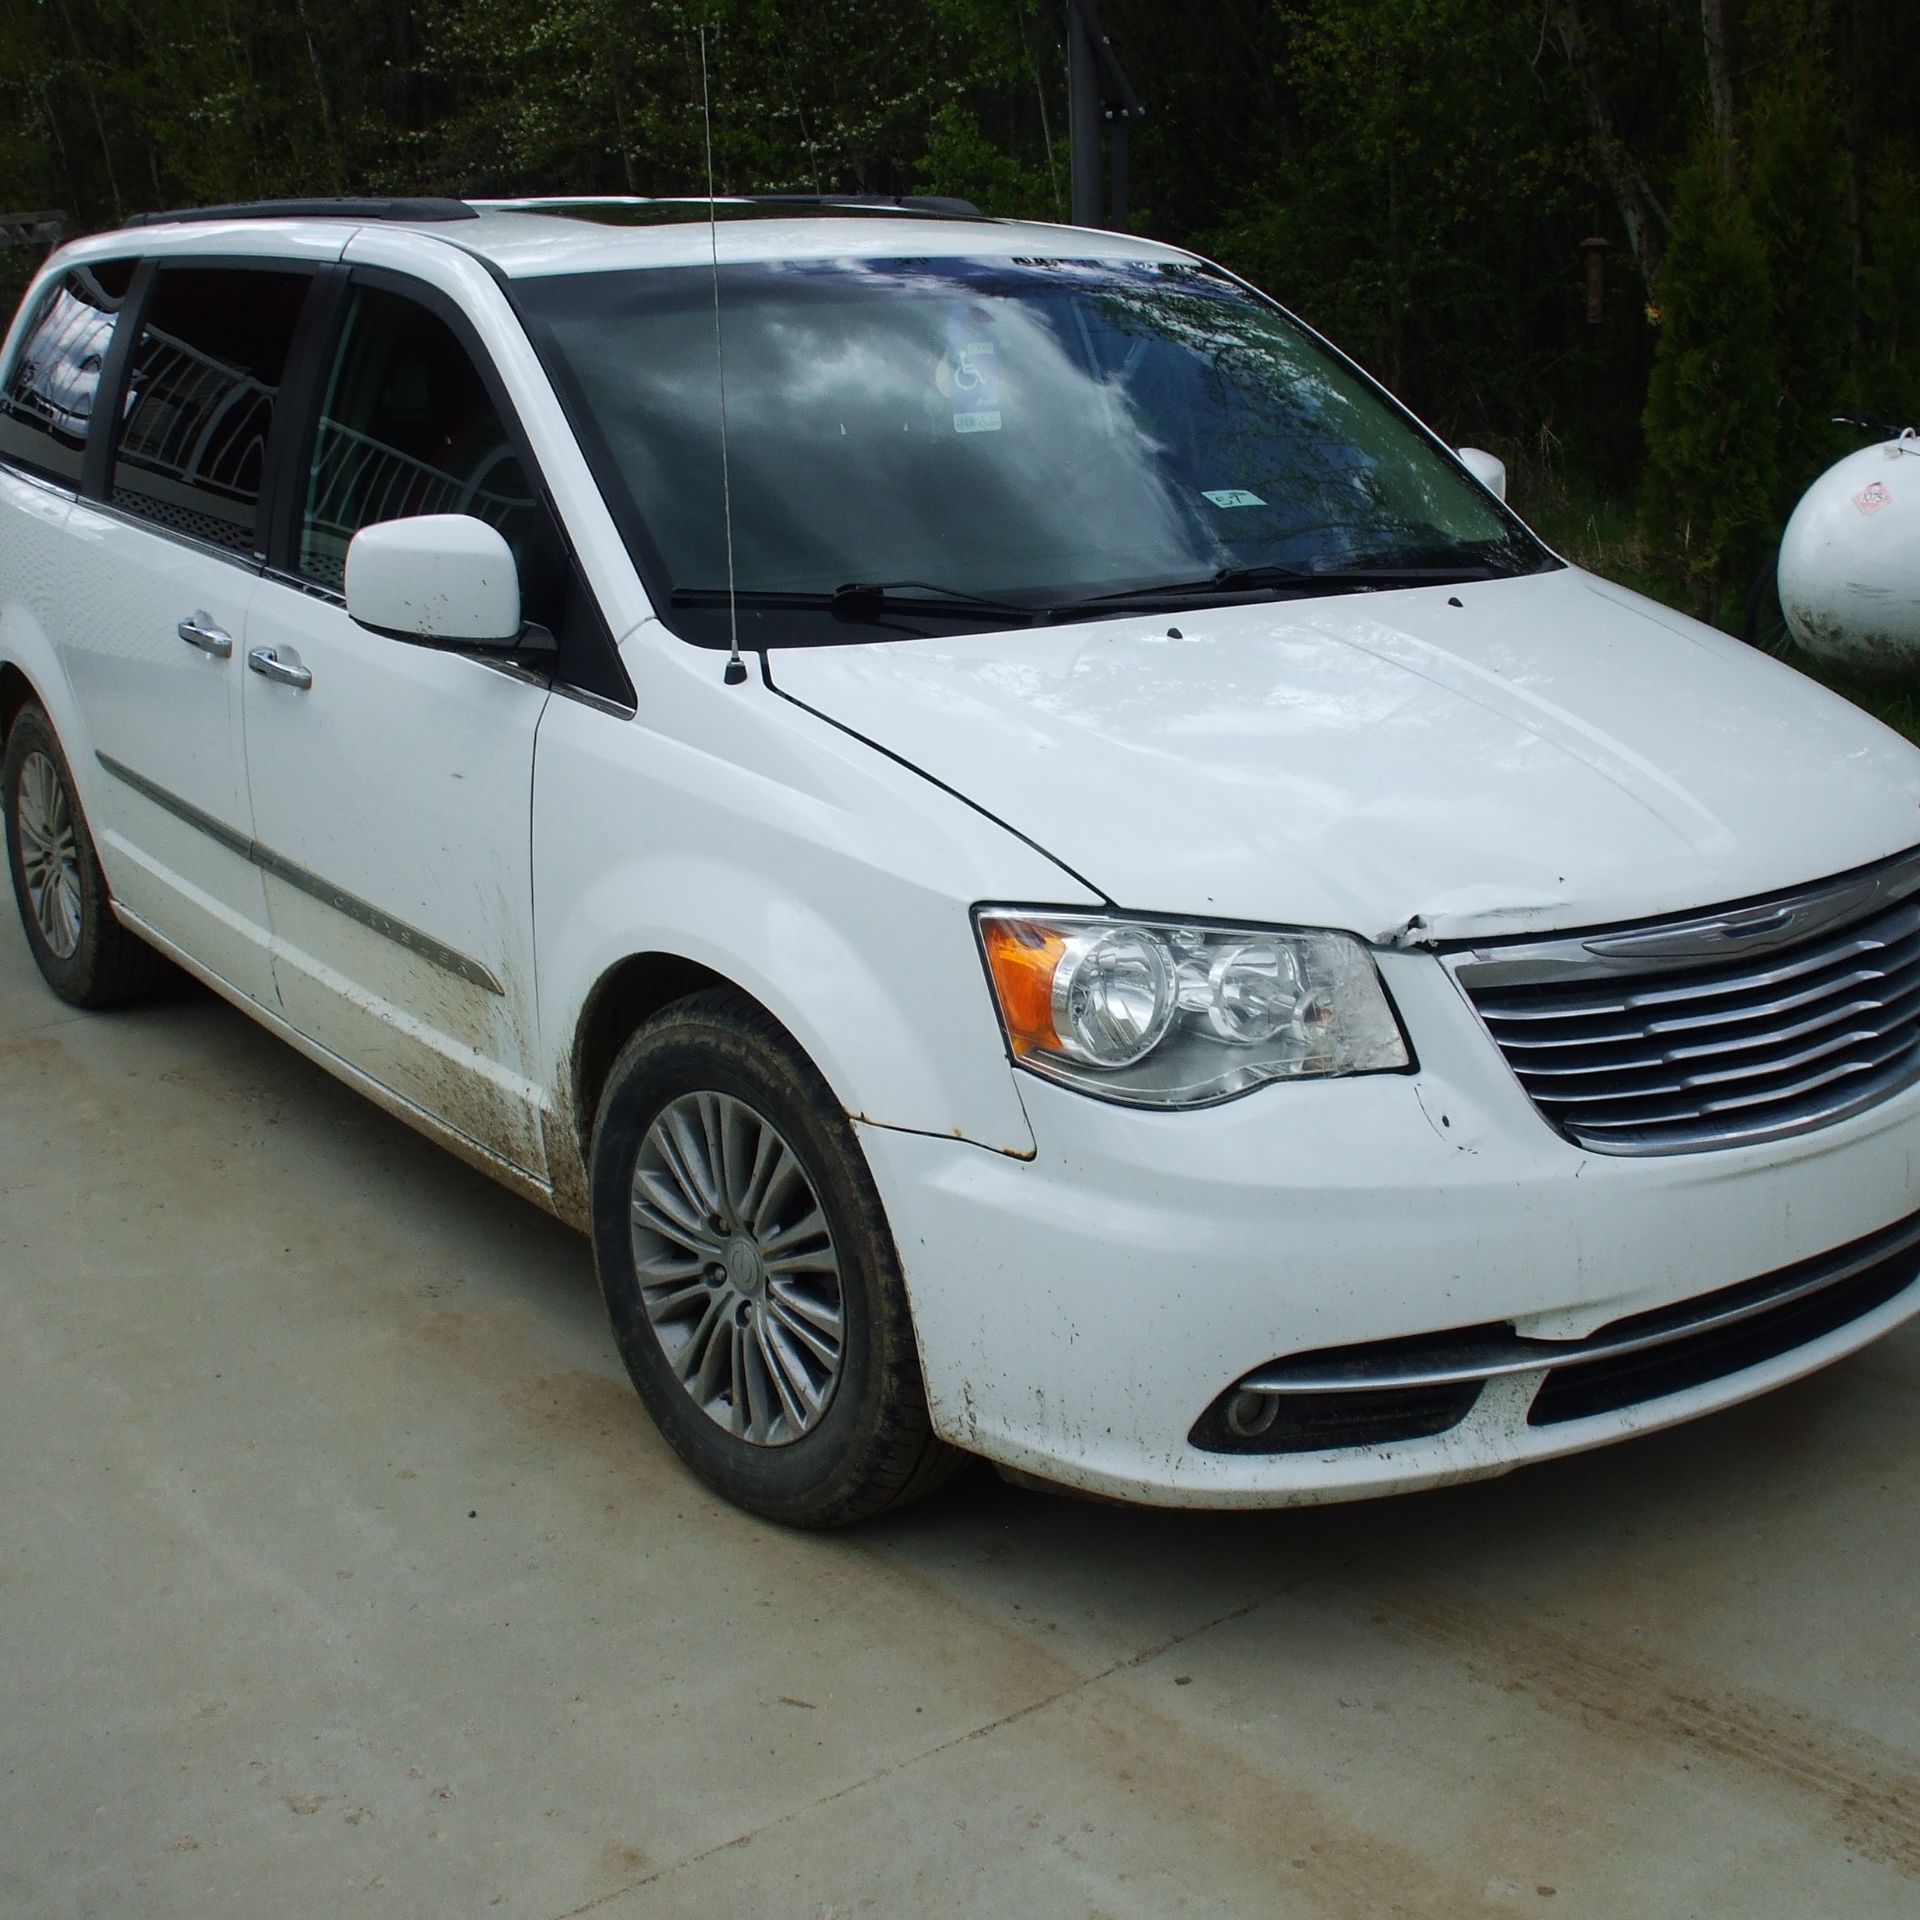 2014 Chrysler Town & Country Van, fully loaded, white, 282453 km